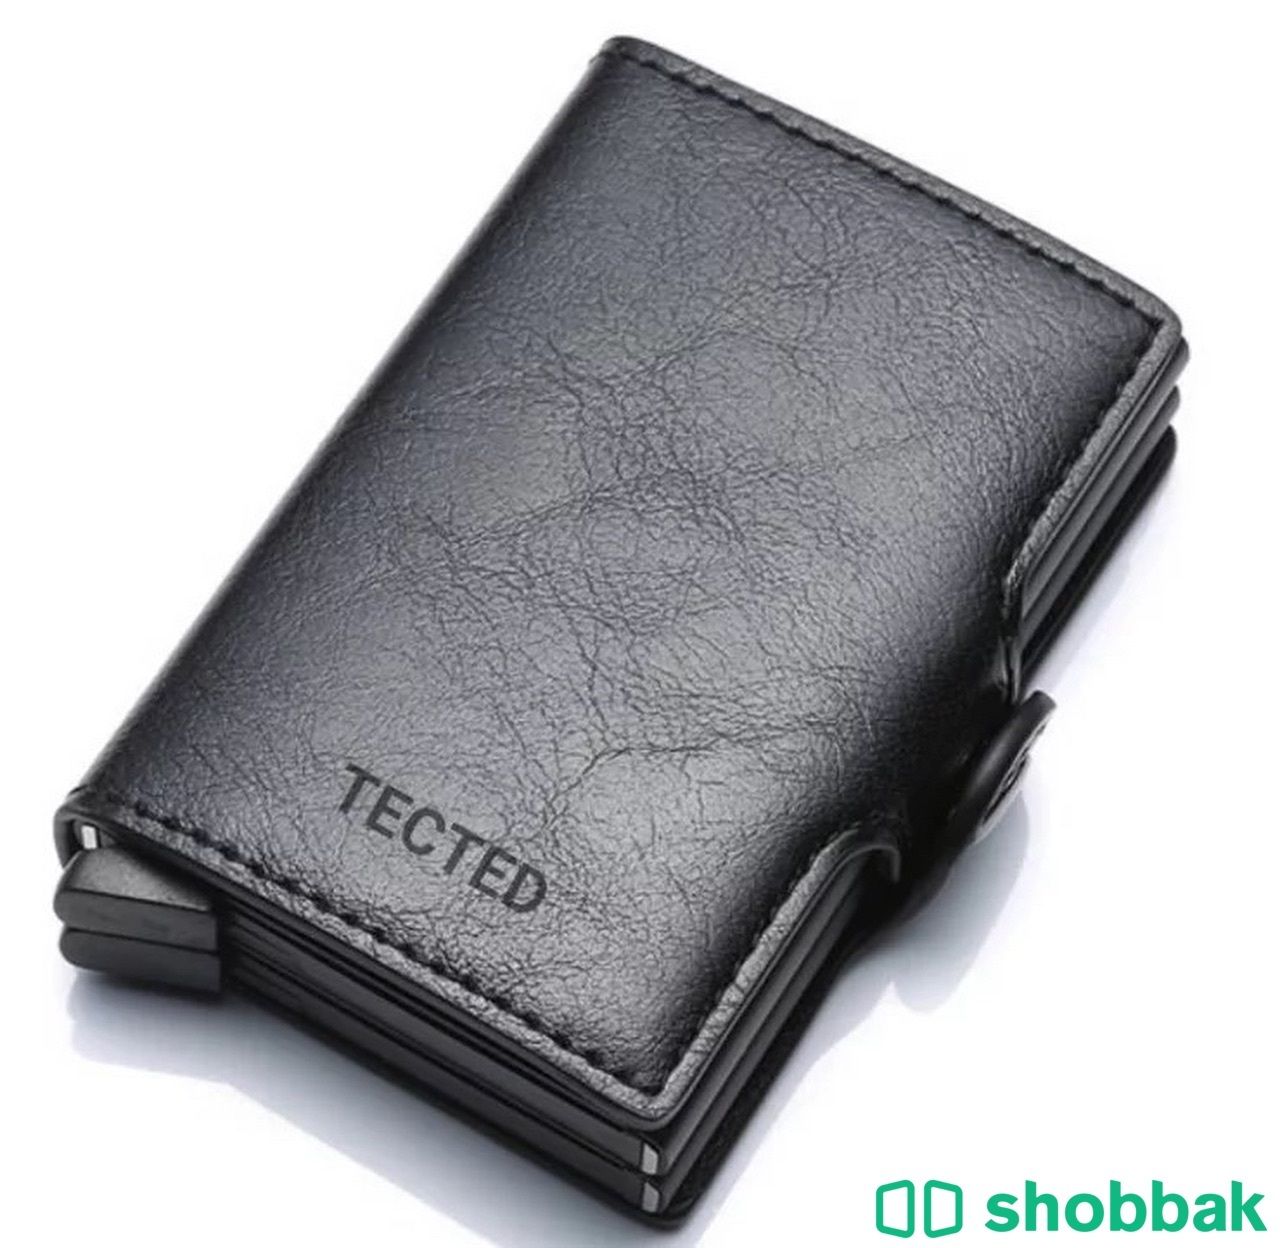 محفظة راقية خفيفة تحمل اكثر من ثمان بطائق  Shobbak Saudi Arabia